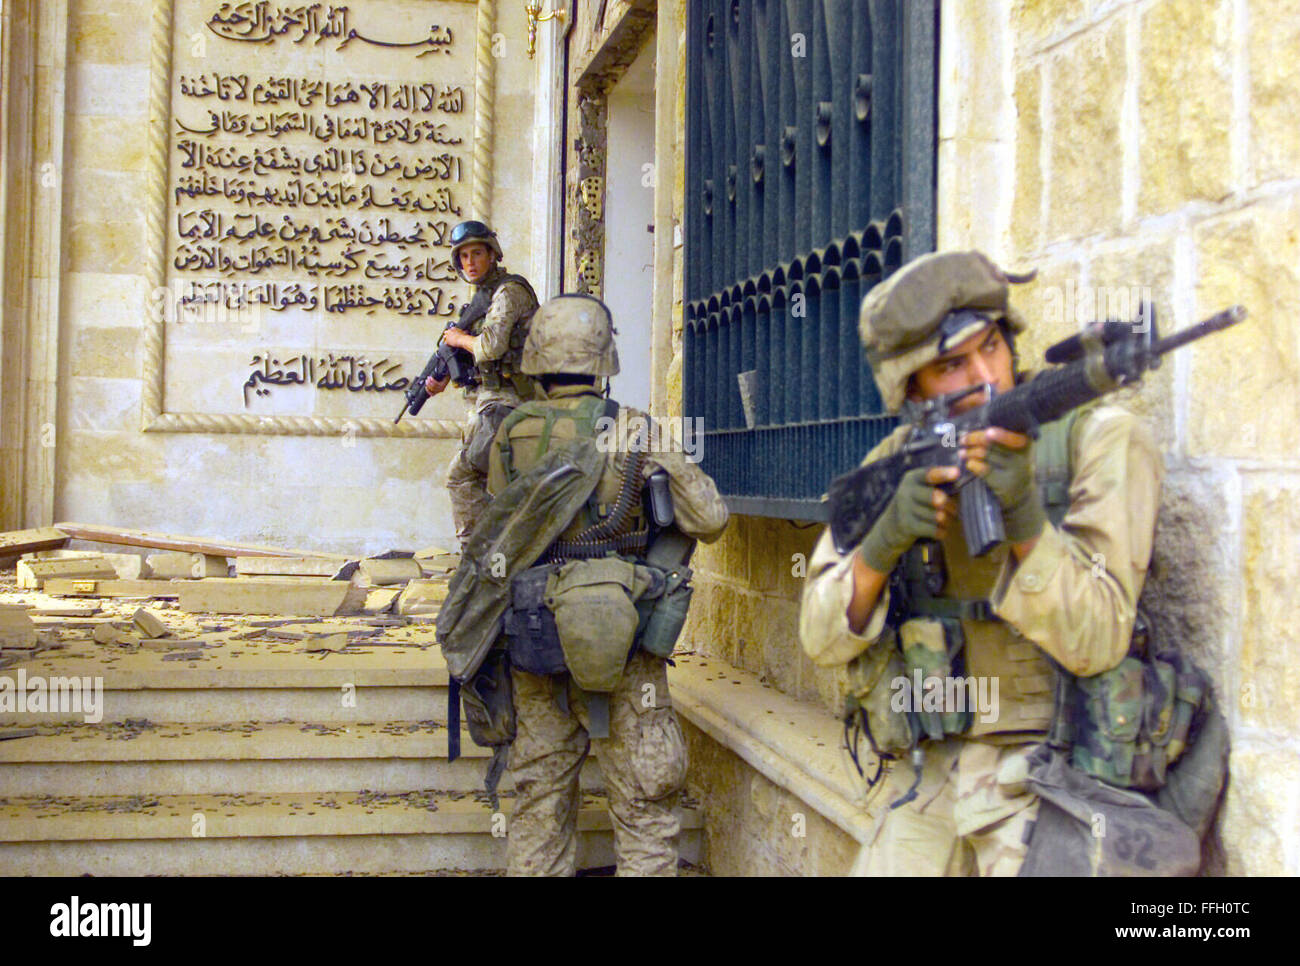 Corps des Marines (USMC) Marines du 1er Bataillon, 7e de marine (1/7), la Compagnie Charlie, Twentynine Palms, California (CA), couvrir les uns les autres avec 5,56 mm M16A2 assault rifles, qui se préparent à entrer dans l'un des palais de Saddam Hussein à Bagdad comme ils le complexe prise durant l'opération IRAQI Banque D'Images